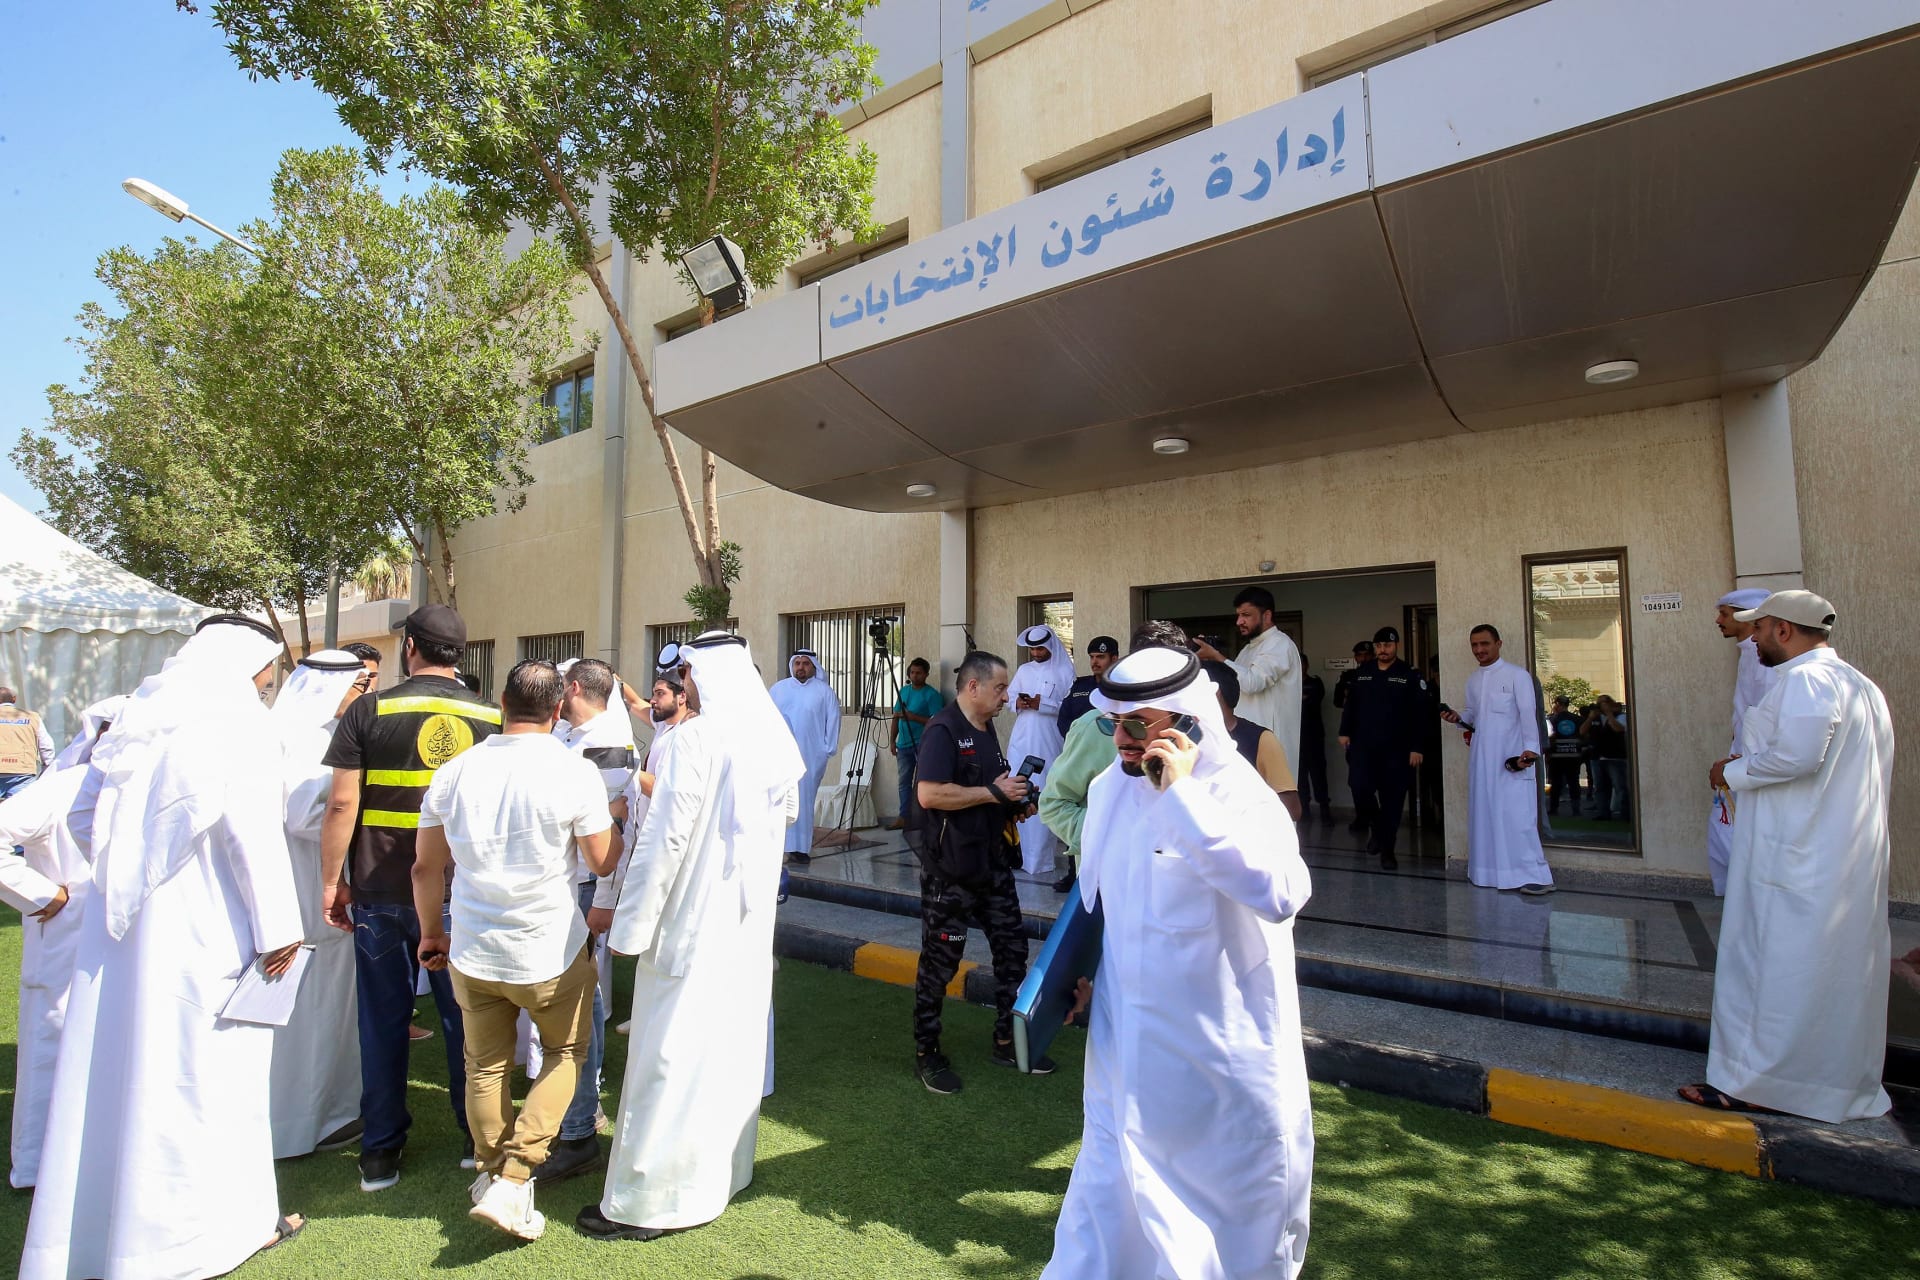 تصاعد حدة الجدل في الكويت حول "وثيقة القيم" وسط توقيعات مرشحين للبرلمان